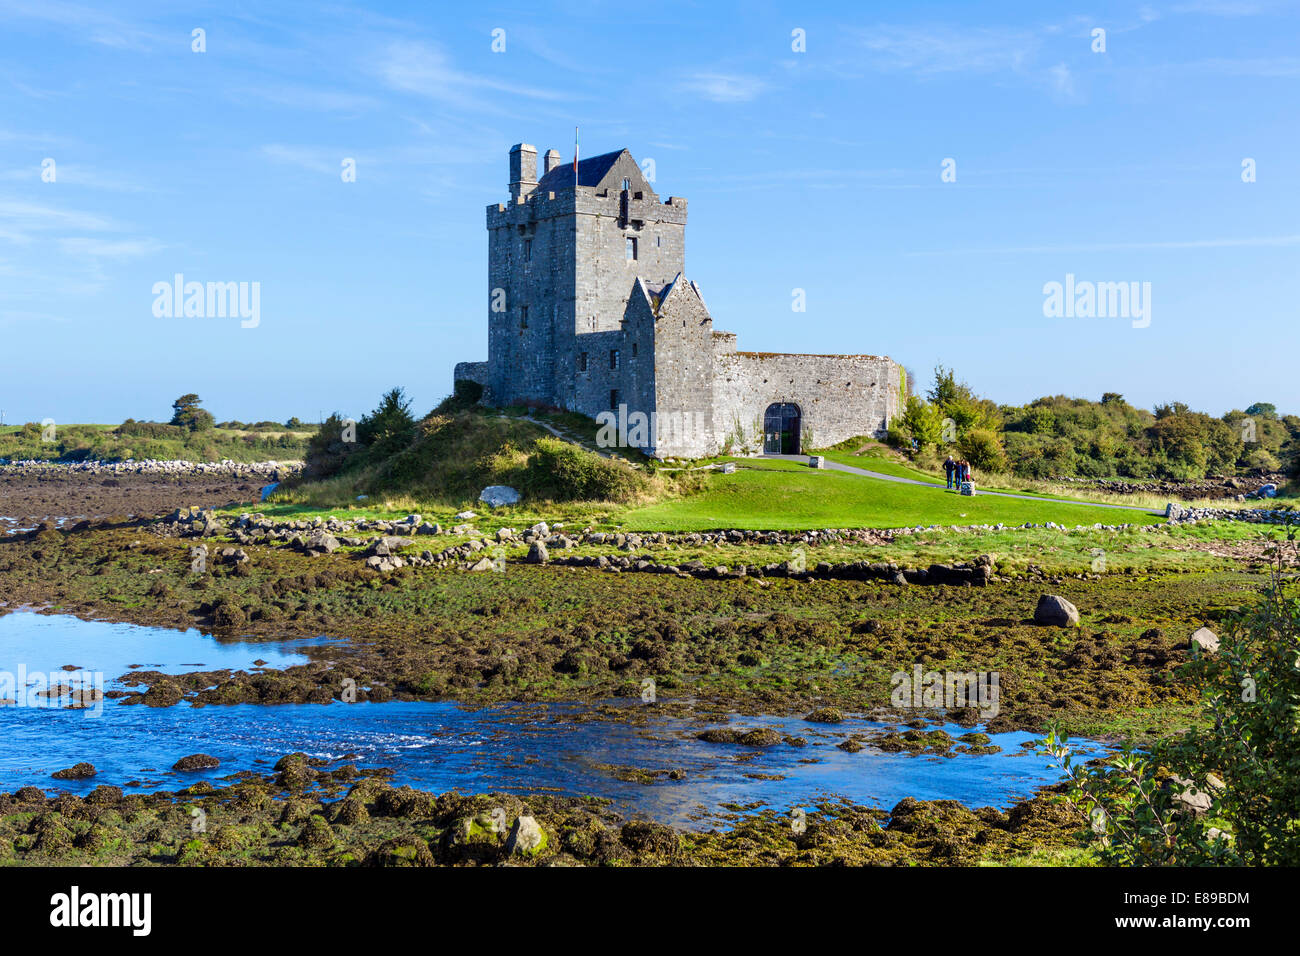 Dunguaire Castle, ein 16thC Wohnturm in der Nähe von Kinvarra, Bucht von Galway, County Galway, Irland Stockfoto